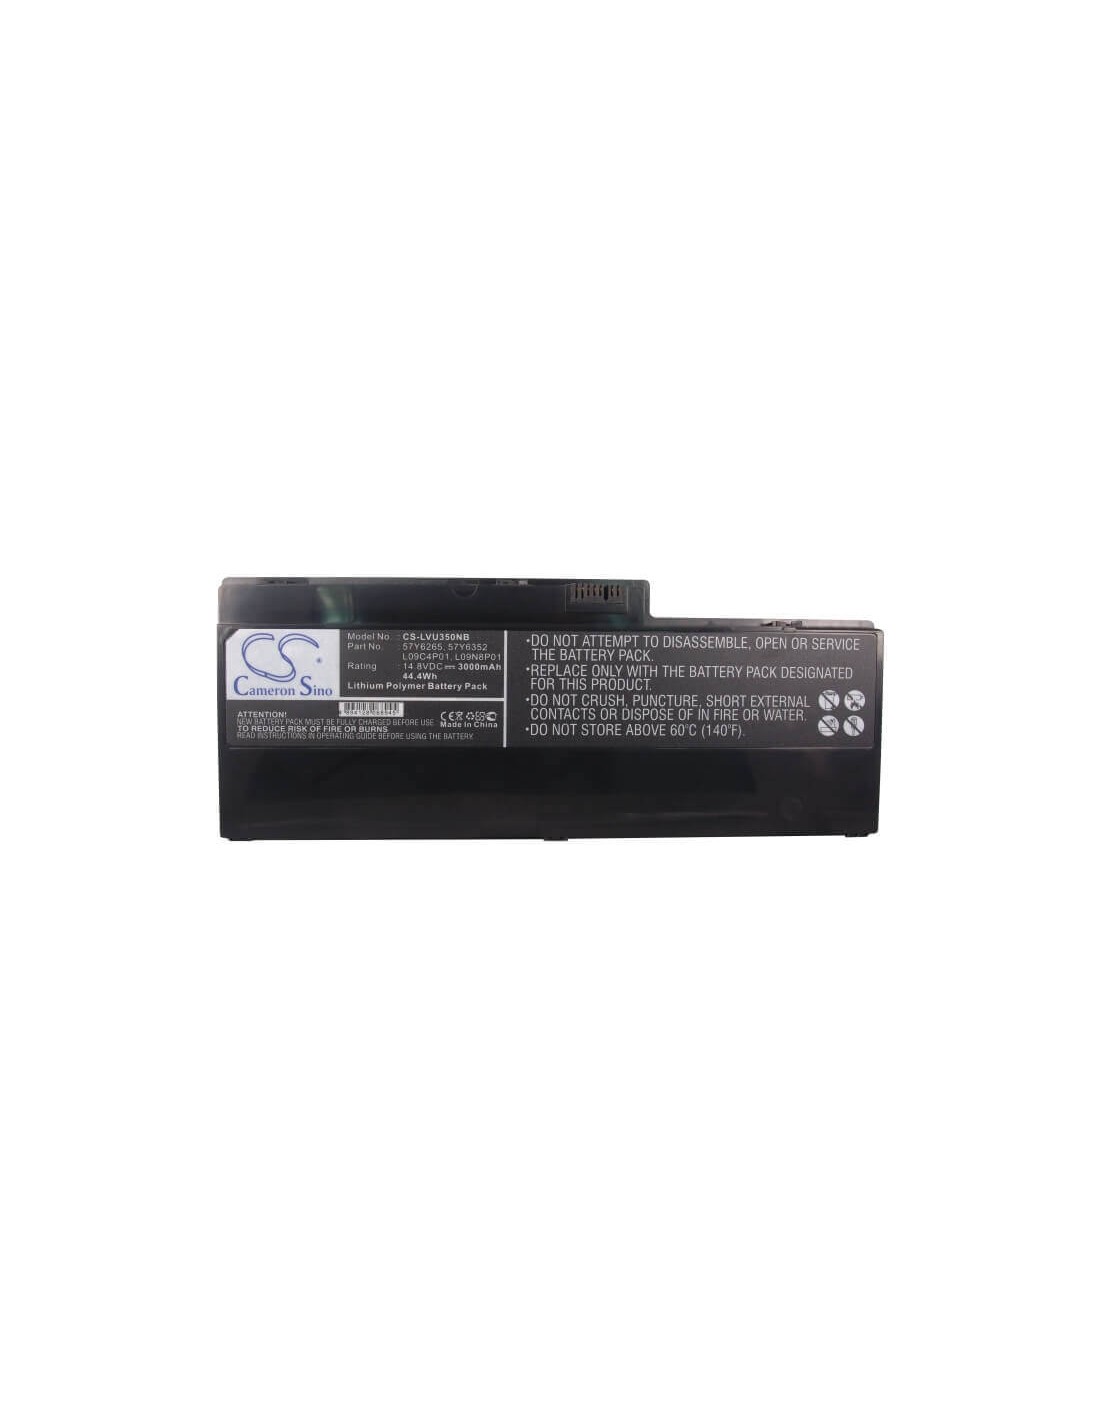 Black Battery for Lenovo Ideapad U350, Ideapad U350 20028, Ideapad U350 2963 14.8V, 3000mAh - 44.40Wh